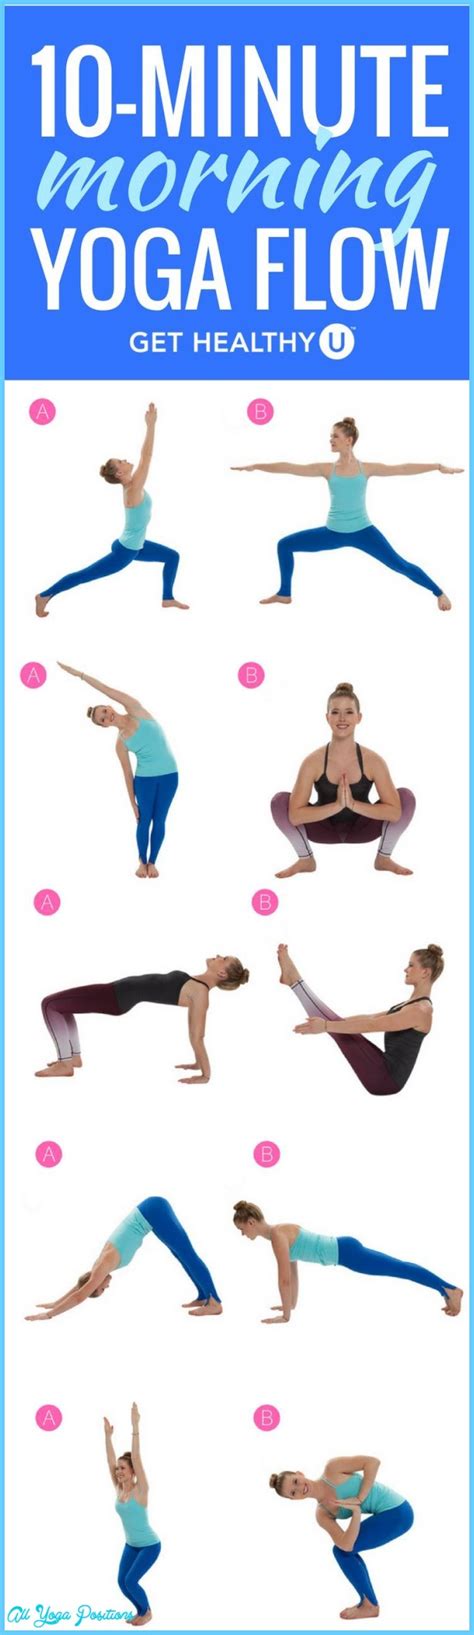 basic yoga poses allyogapositionscom